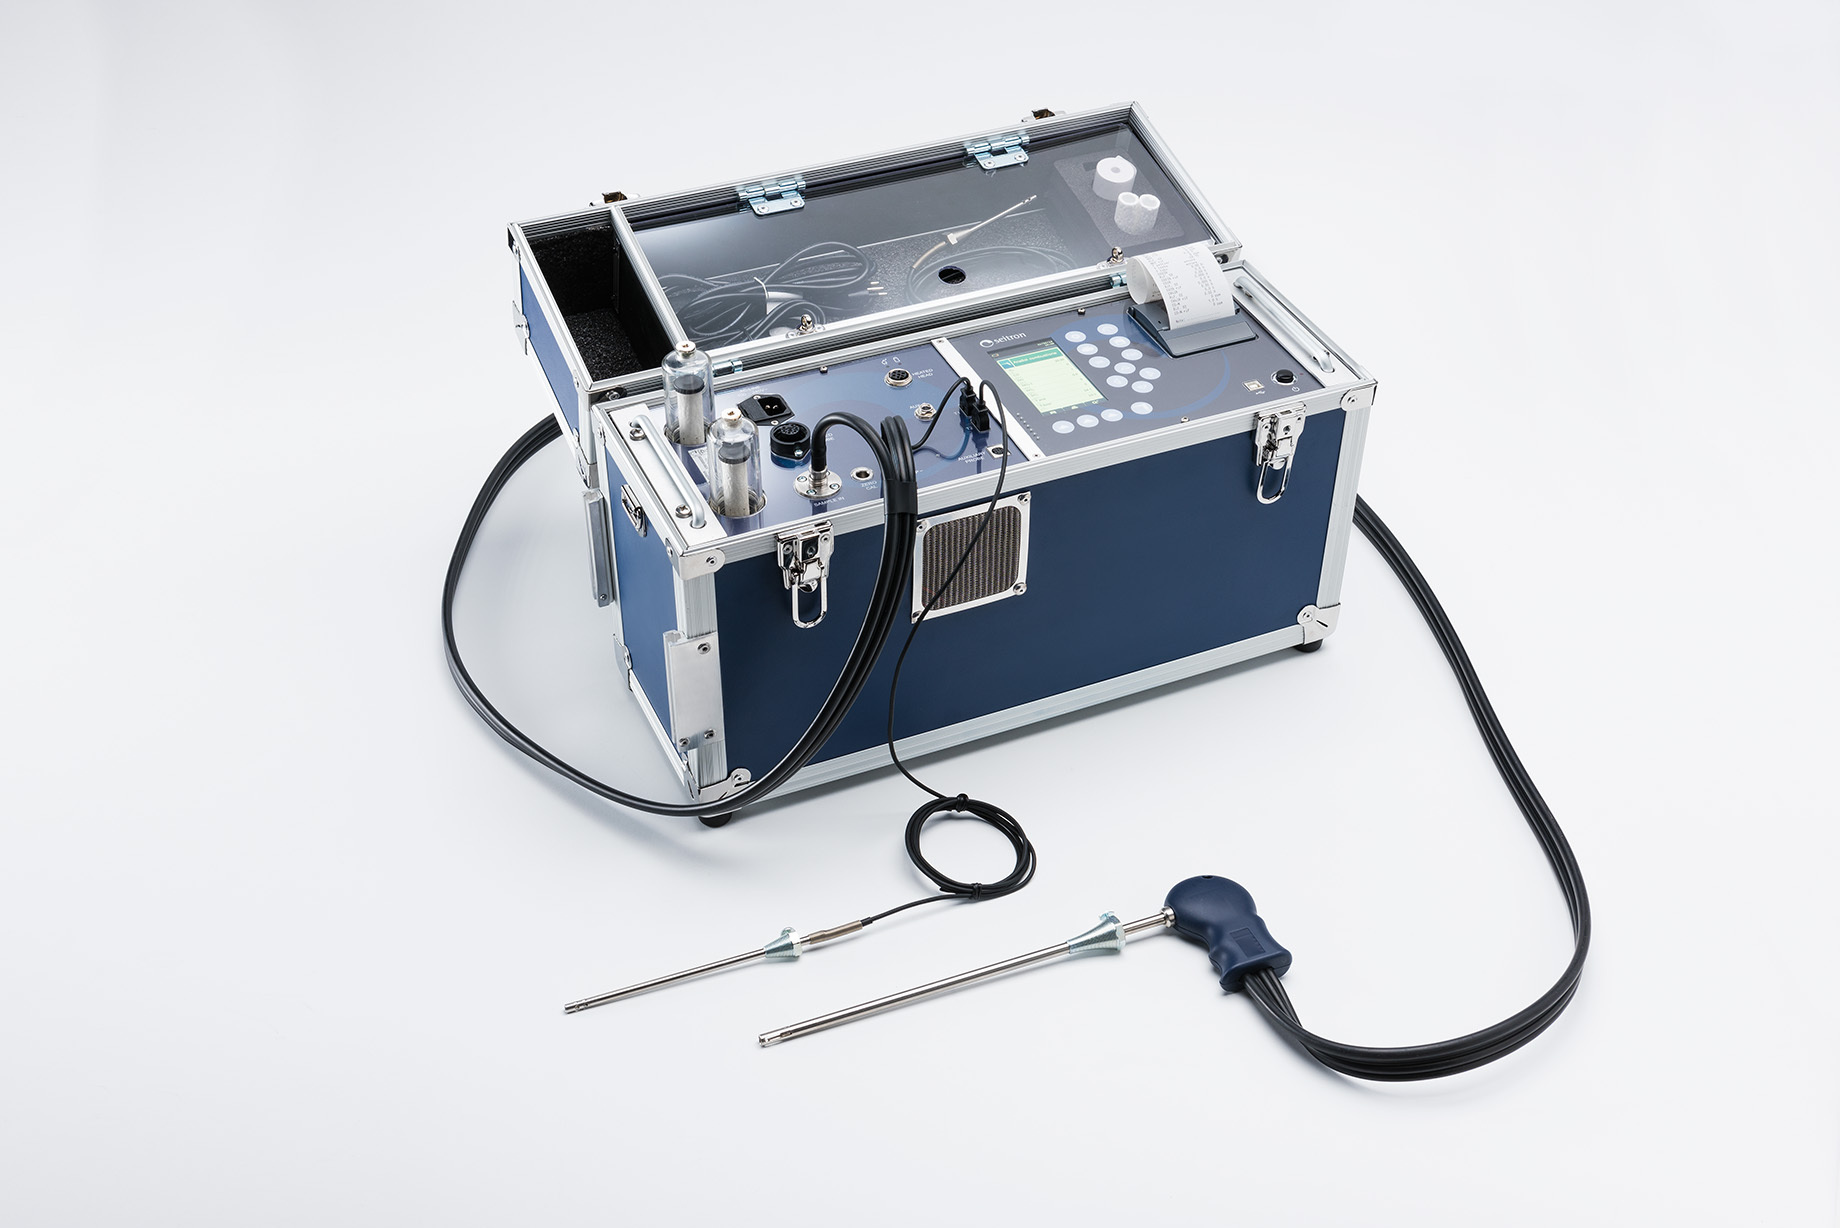 Seitron便携式烟气分析仪 C900